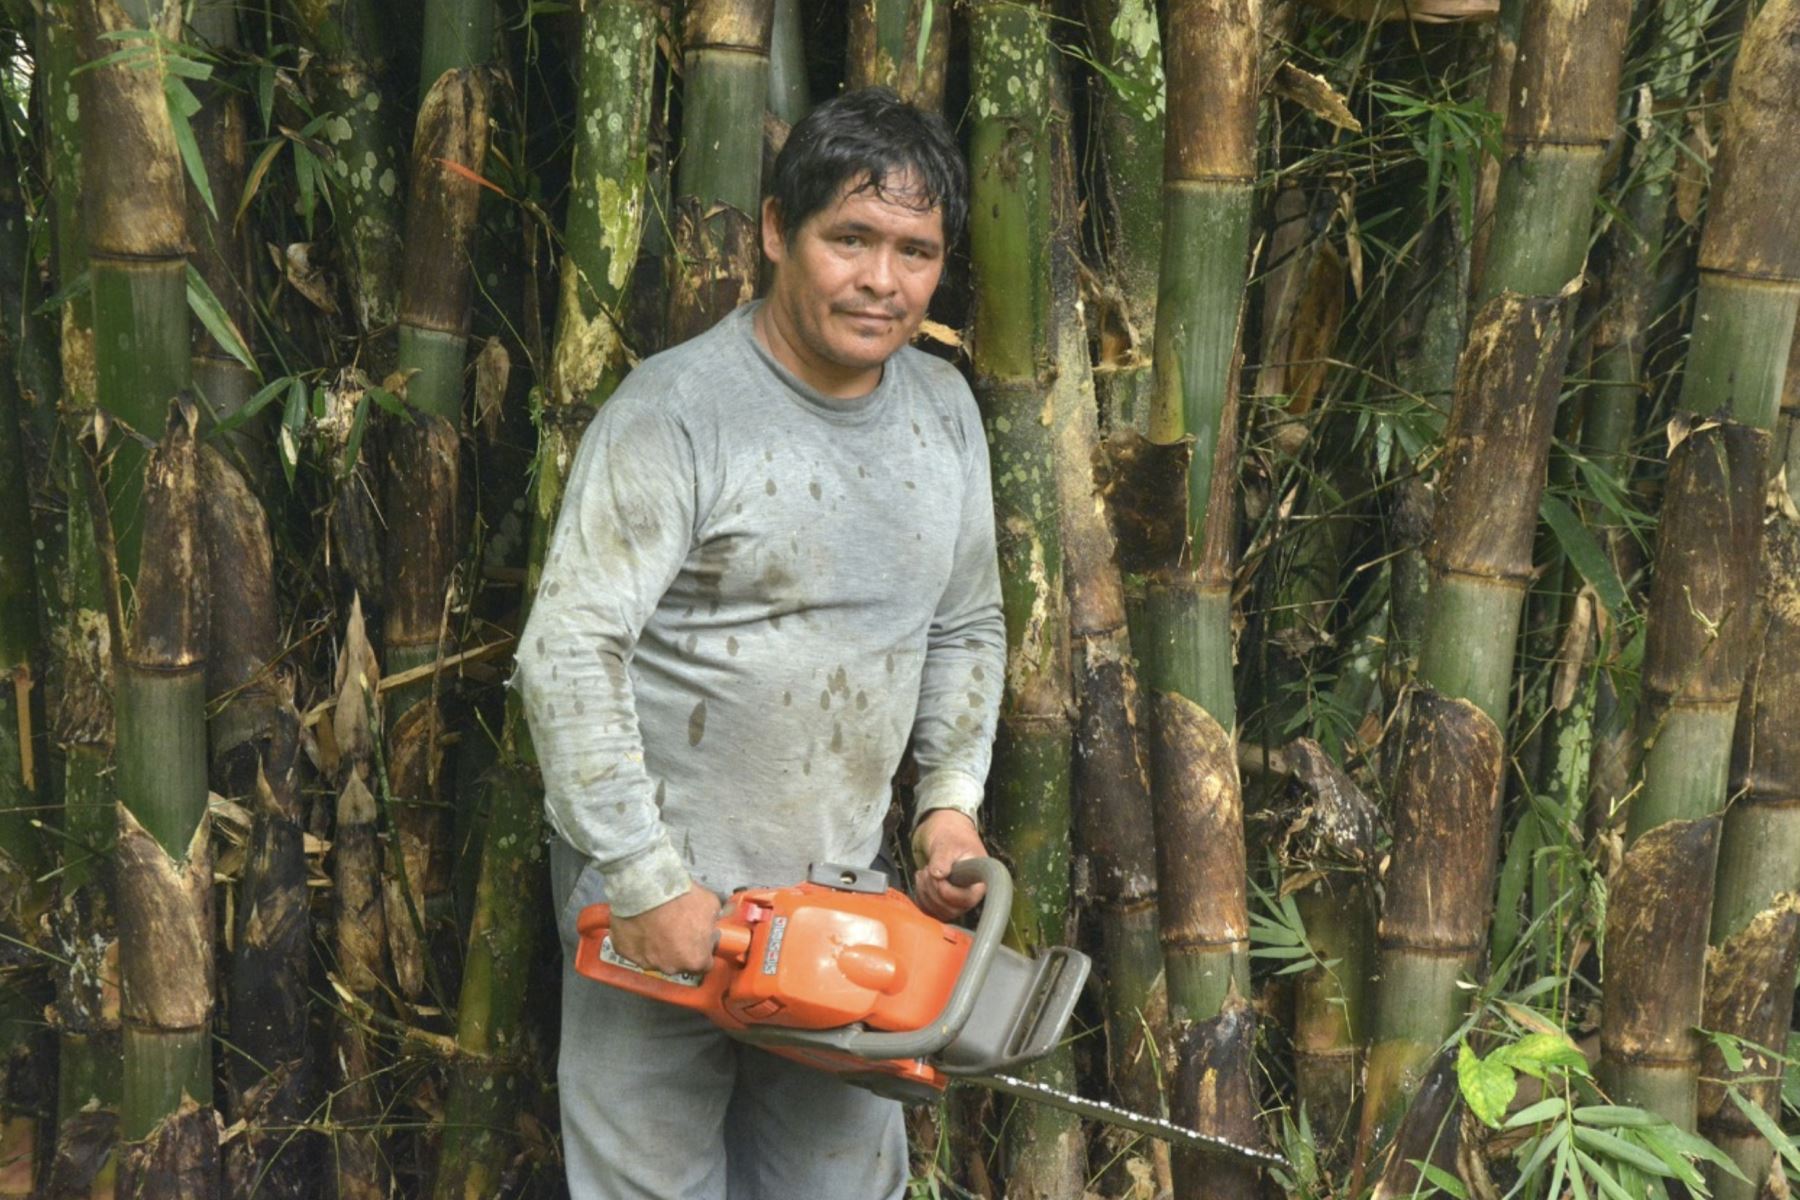 Seguir impulsando el desarrollo del bambú, hasta lograr que las más altas autoridades del Estado reconozcan el potencial de este recurso no maderable para el desarrollo sostenible del paí, acordaron autoridades de Junín, San Martín, Piura y Cajamarca; entidades públicas y privadas, así como organizaciones internacionales.ANDINA/Difusión